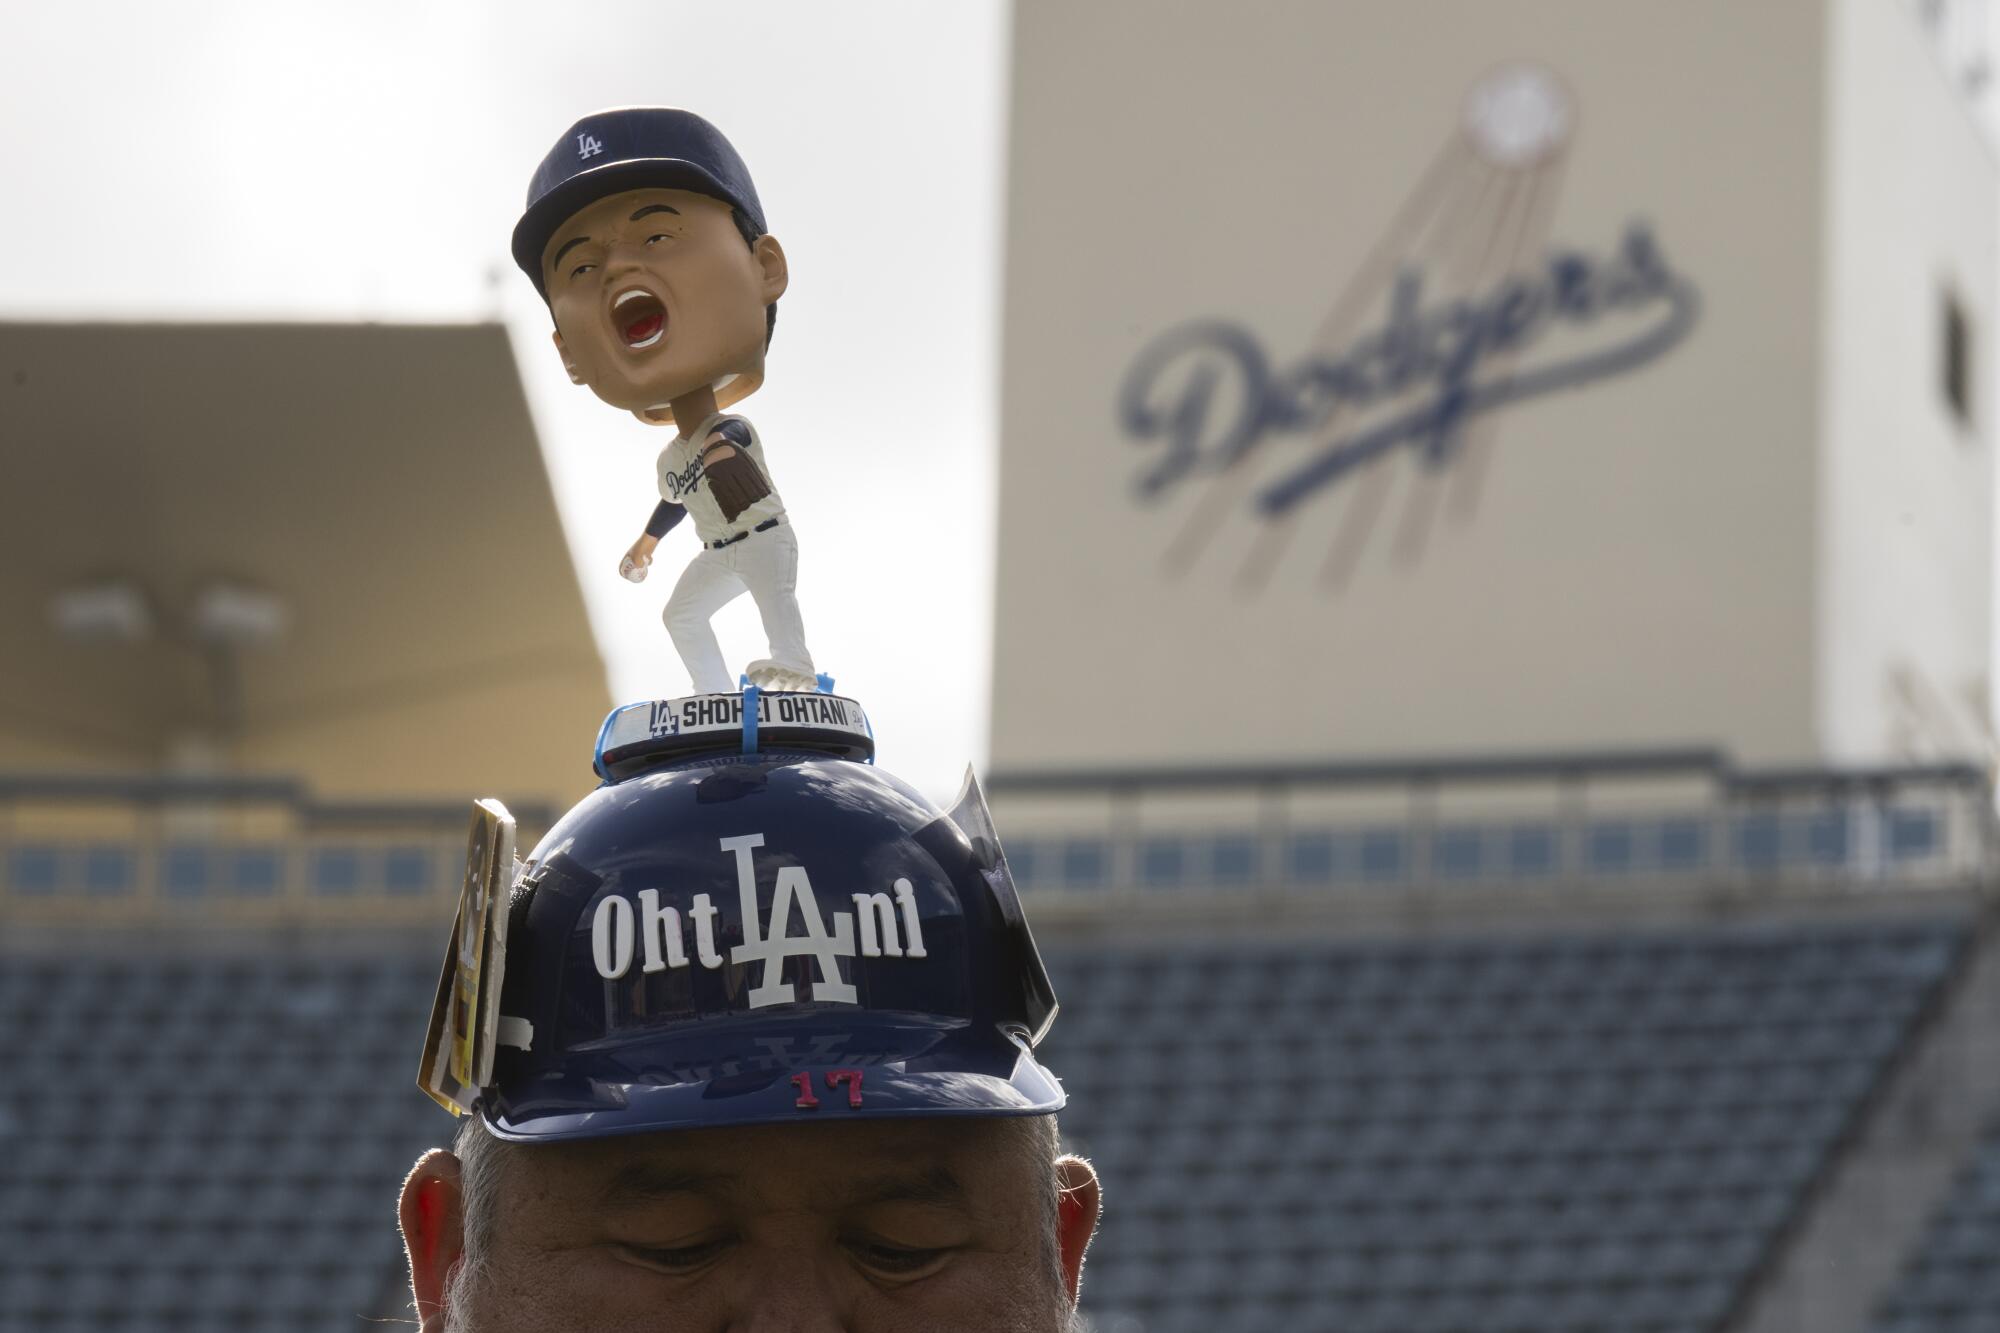 道奇队球迷阿尔贝托·巴伦苏埃拉 (Alberto Valenzuela) 戴着带有 Shohei Ohtani 摇头公仔的击球头盔，出席在道奇体育场举行的道奇节 (DodgerFest)。